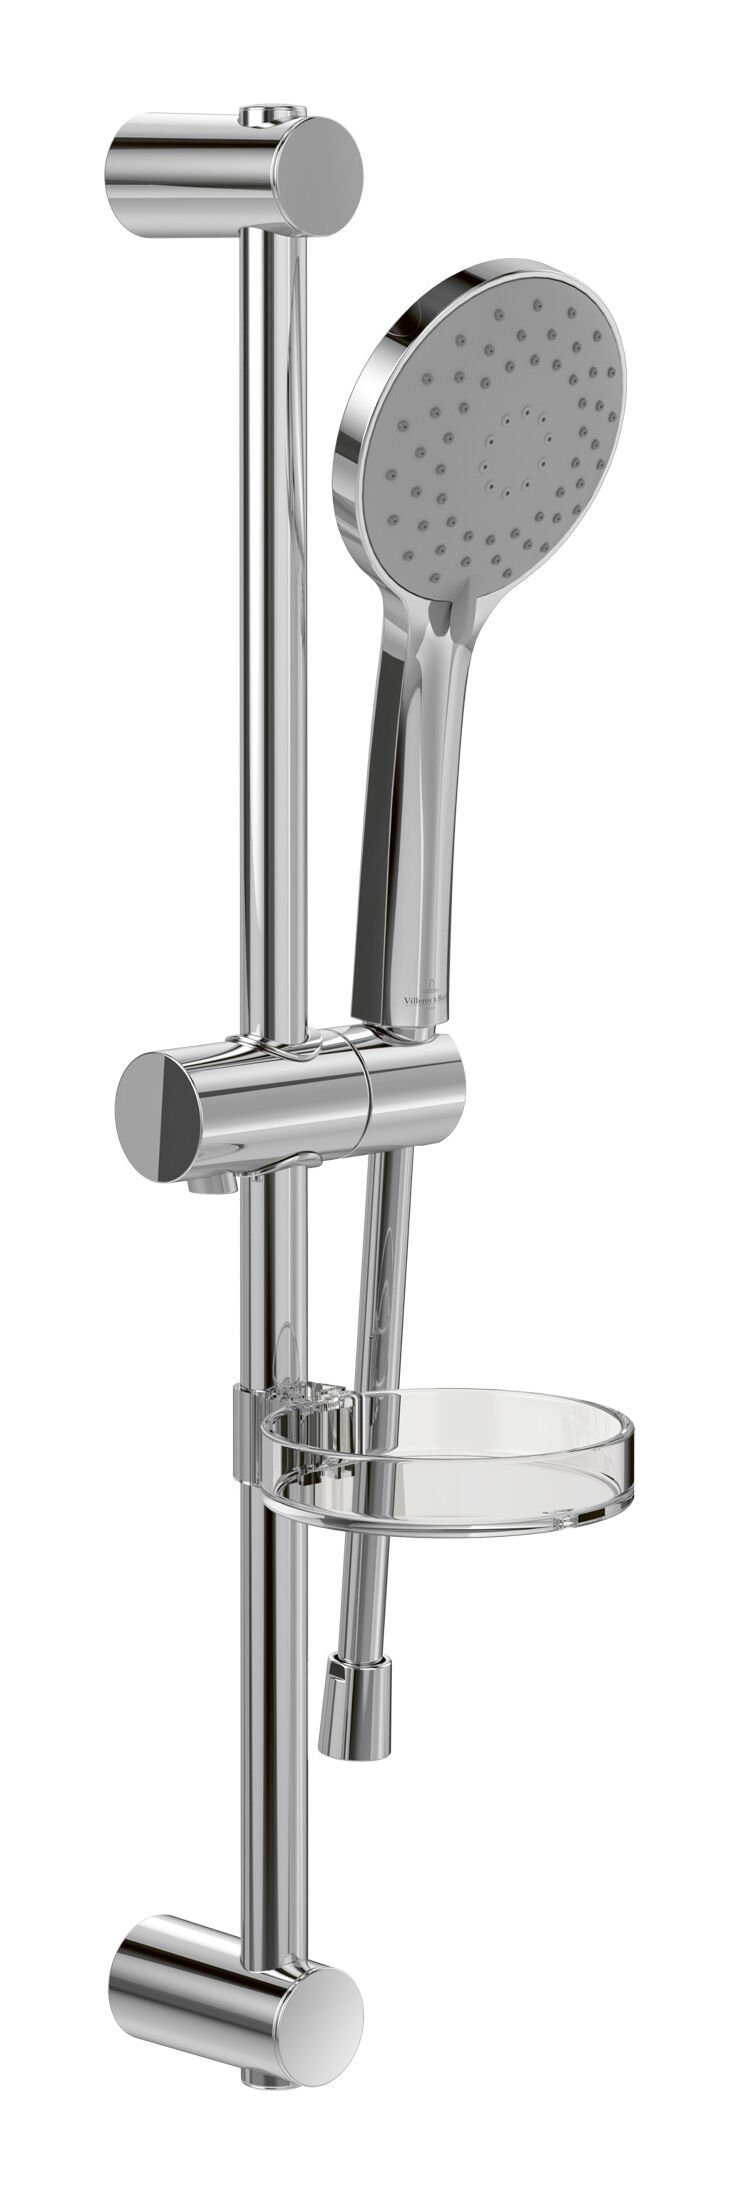 Villeroy & Boch Duschsystem Universal Showers, Höhe 60.4 cm, 3 Strahlart(en), Duschgarnitur mit drei Strahlarten - Chrom